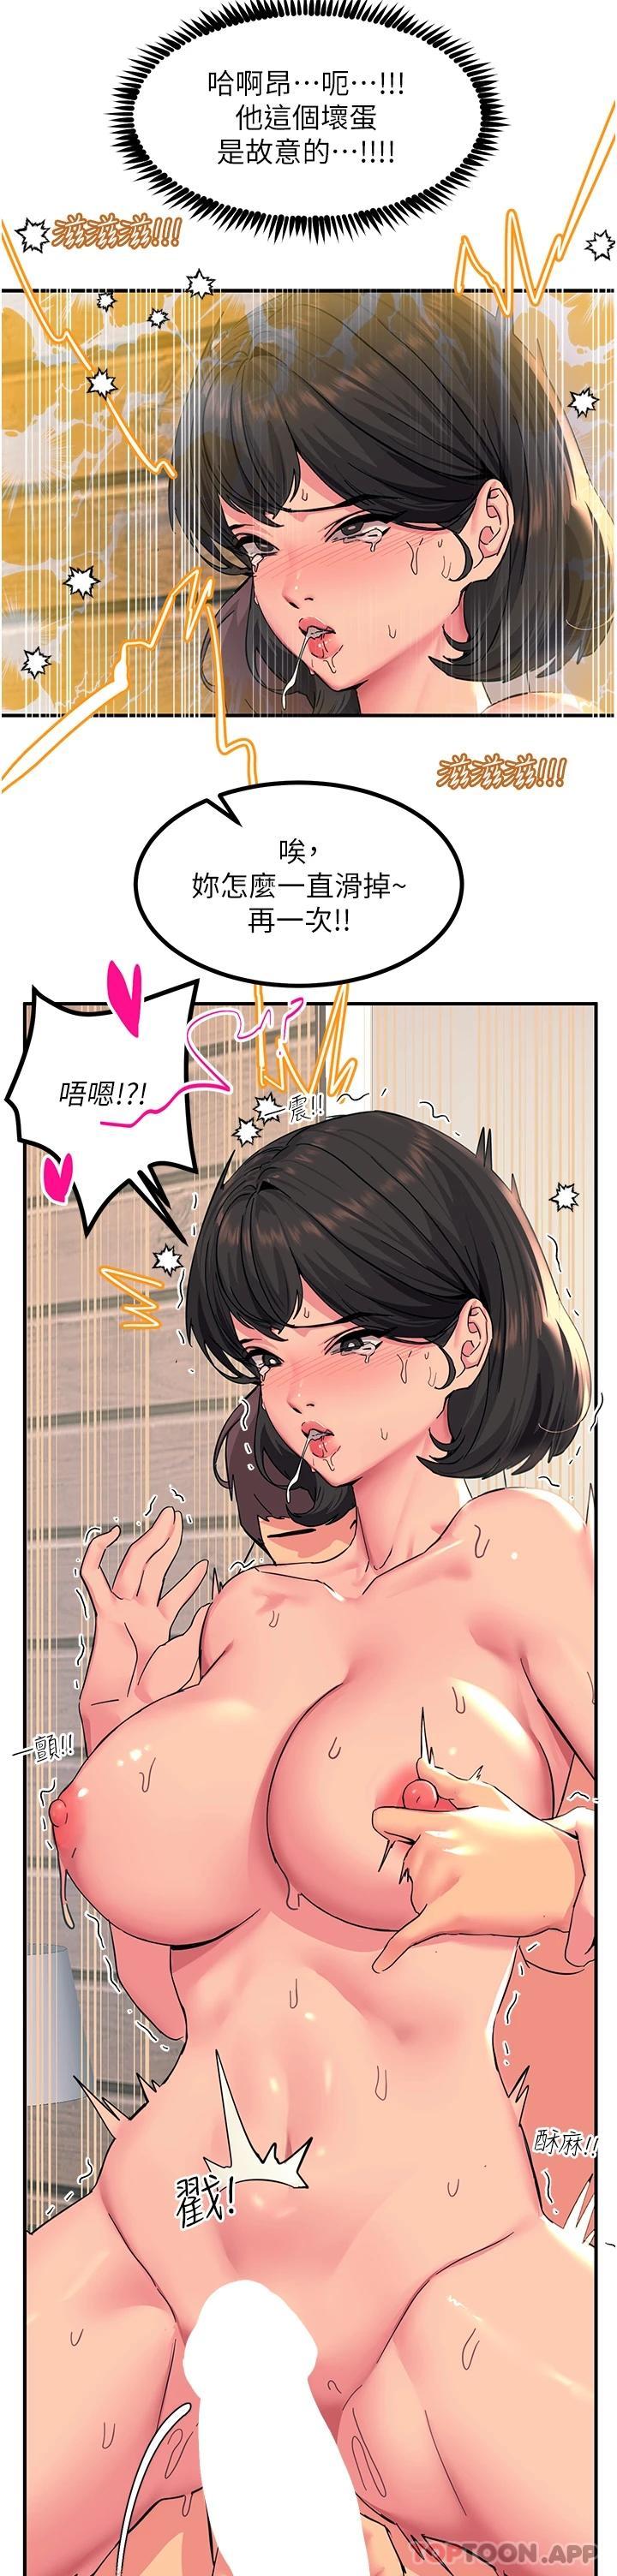 韩国污漫画 觸電大師 第37话-听话母狗的喷水秀 29